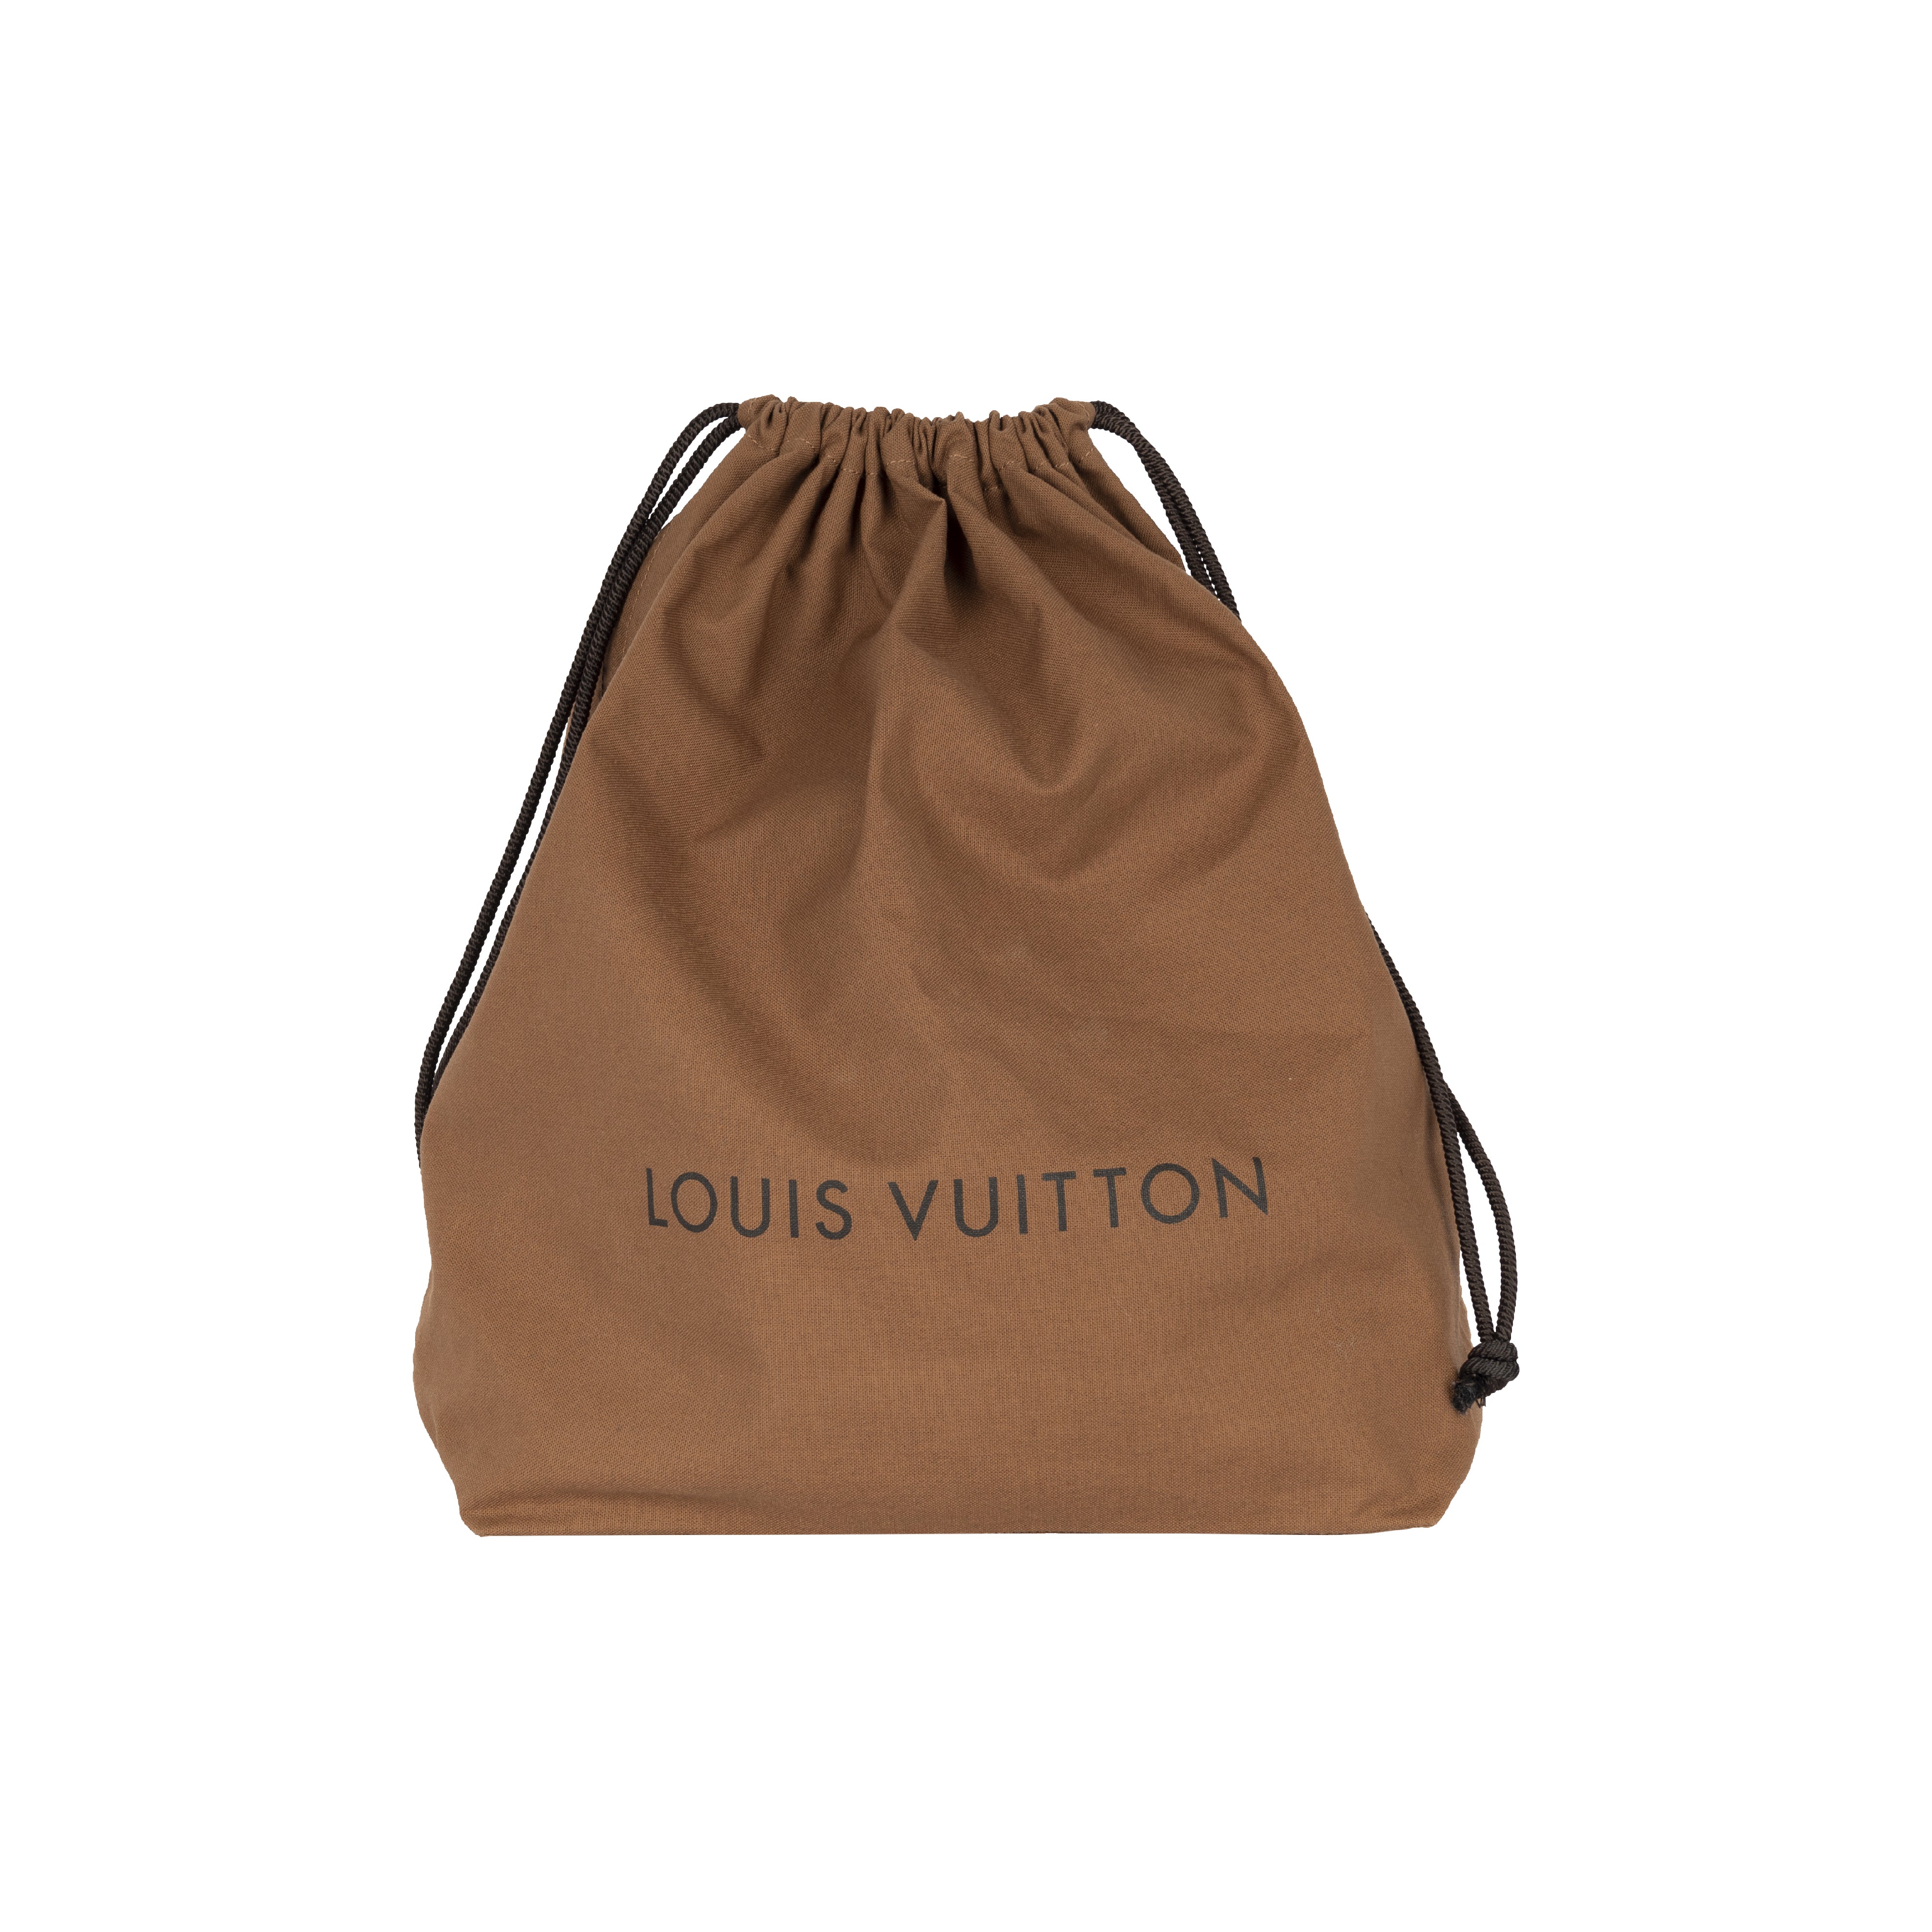 LOUIS VUITTON BAG WITH HOLES TOTE BAG SP4174 COMME DES GARCONS